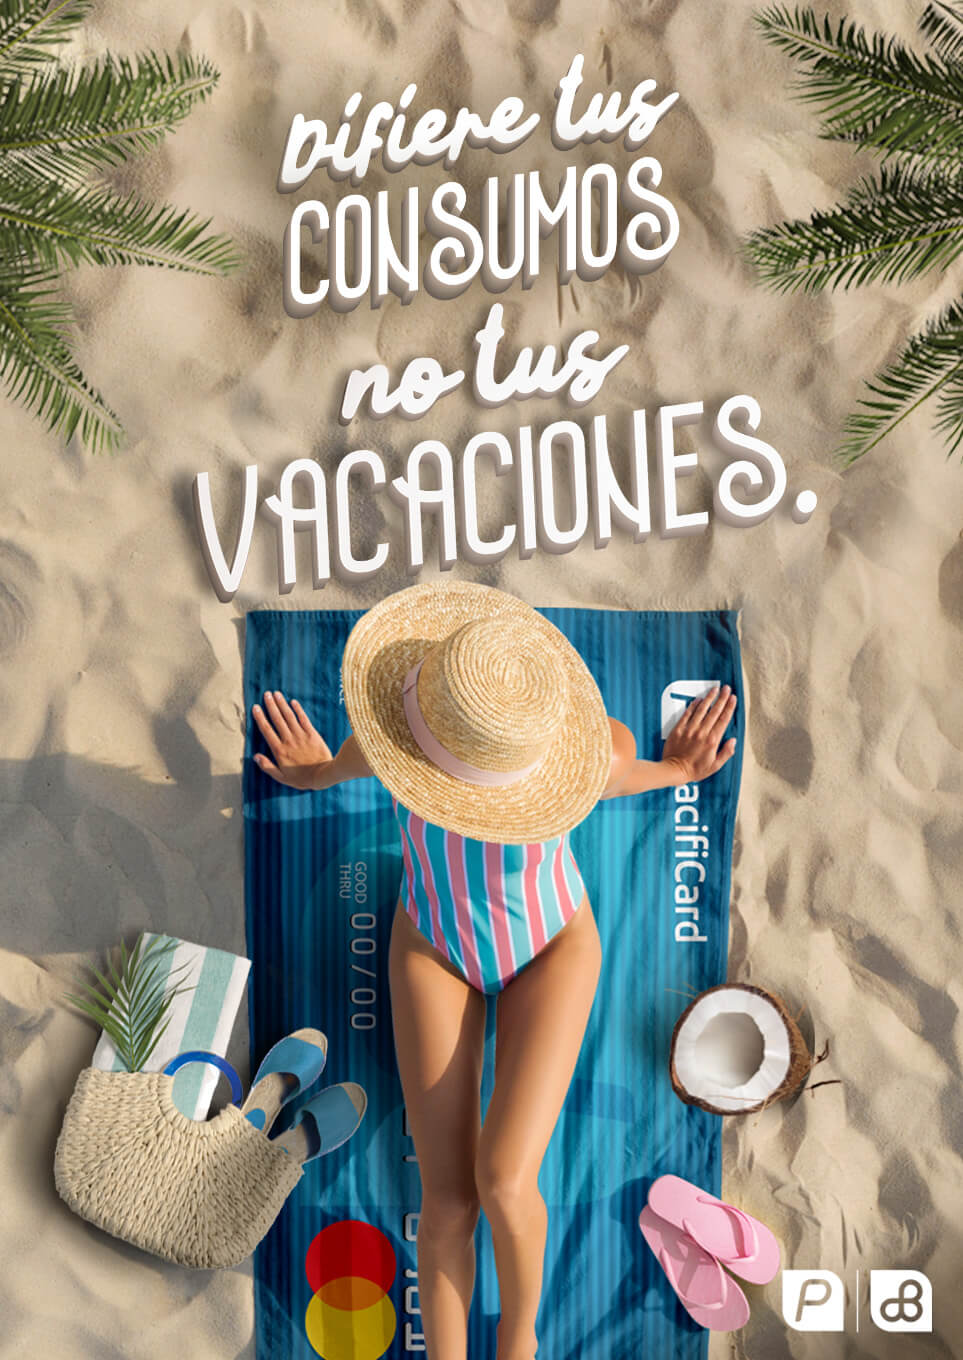 Difiere tus consumos, no tus vacaciones